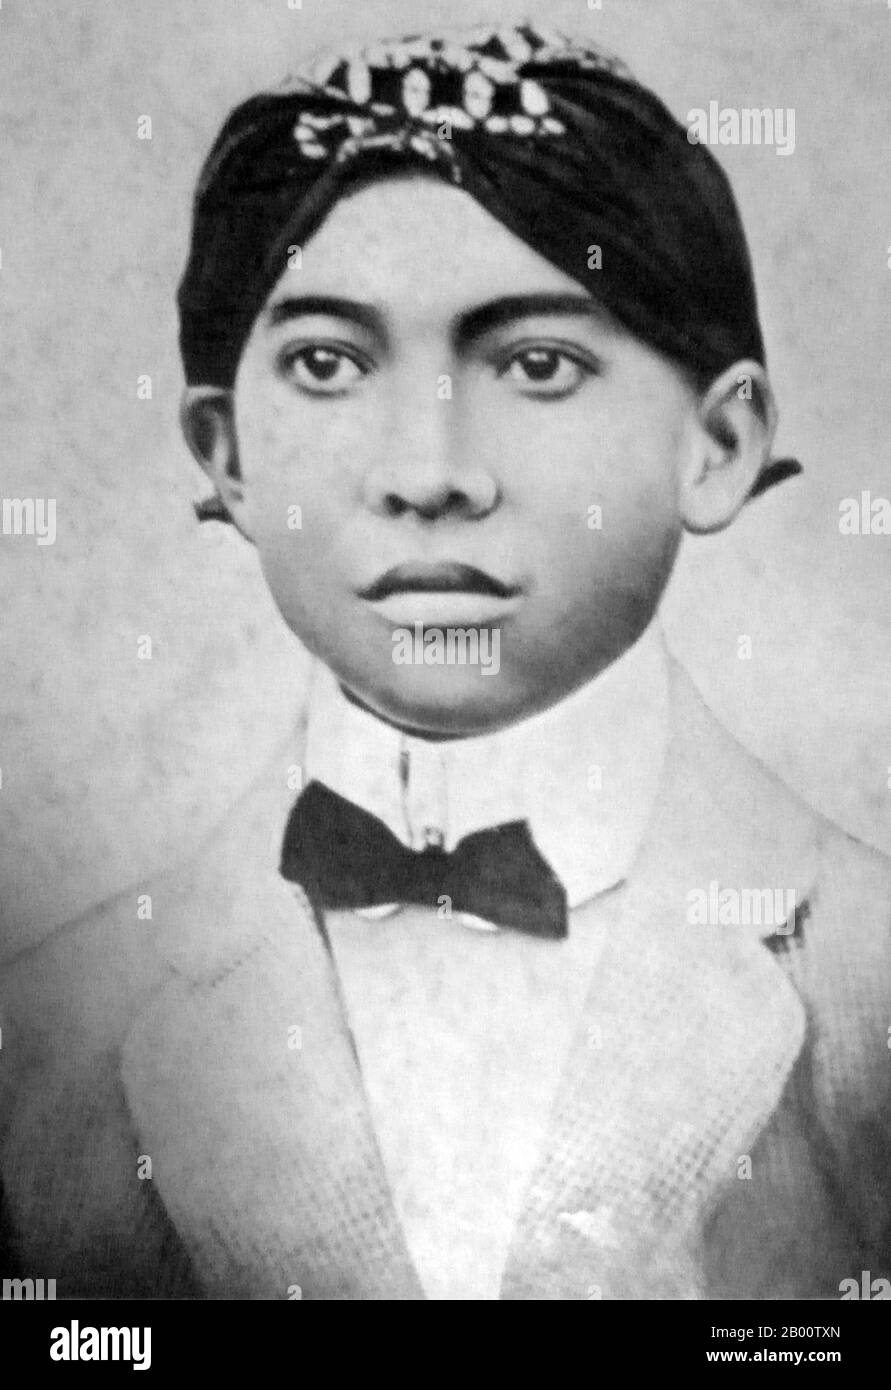 Indonesien: Sukarno (1901-1970), erster Präsident Indonesiens, als Student in Surabaya, 1916. Sukarno wurde am 6. Juni 1901 in Blitar, Ost-Java, geboren. Sein Name war Kusno Sosrodihardjo, aber er wurde nach javanesischem Brauch umbenannt, nachdem er eine Kinderkrankheit überlebt hatte. Sein Name wird häufig Soekarno nach der niederländischen Schreibweise geschrieben. Am 4. Juli 1927 gründeten Sukarno und einige Freunde das Partai Nasional Indonesia (PNI), um für die Unabhängigkeit Indonesiens zu kämpfen. Sukarno wurde 1930 als politischer Gefangener verurteilt, wurde aber 1931 freigelassen, nachdem seine Sache im Ausland weithin gemeldet wurde. Stockfoto